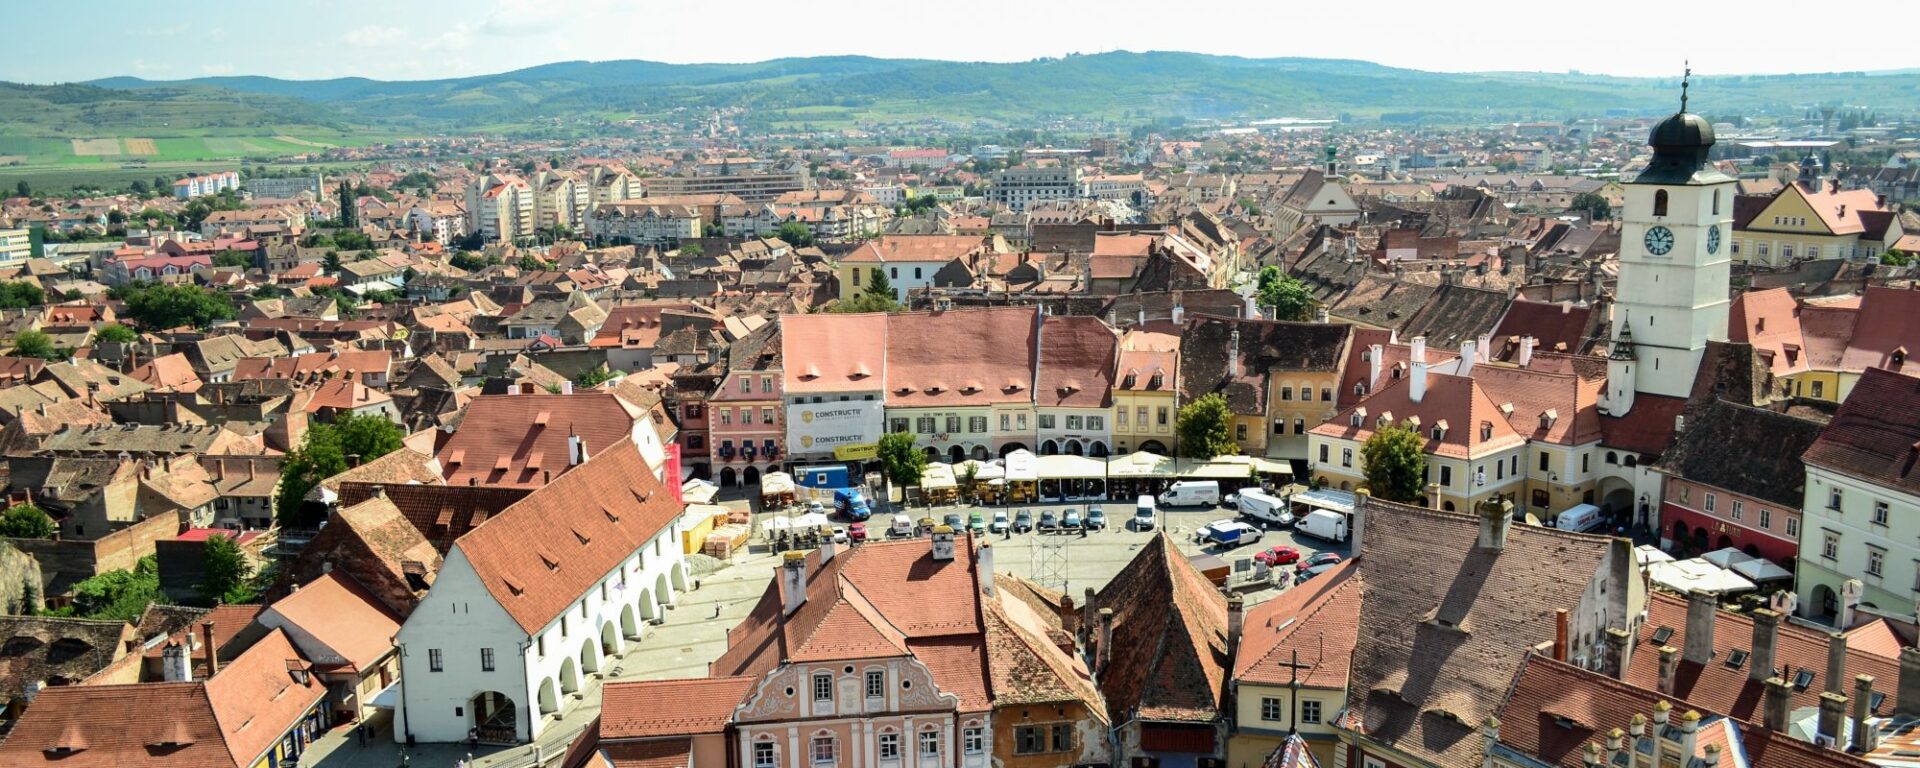 A view of Sibiu, Romania